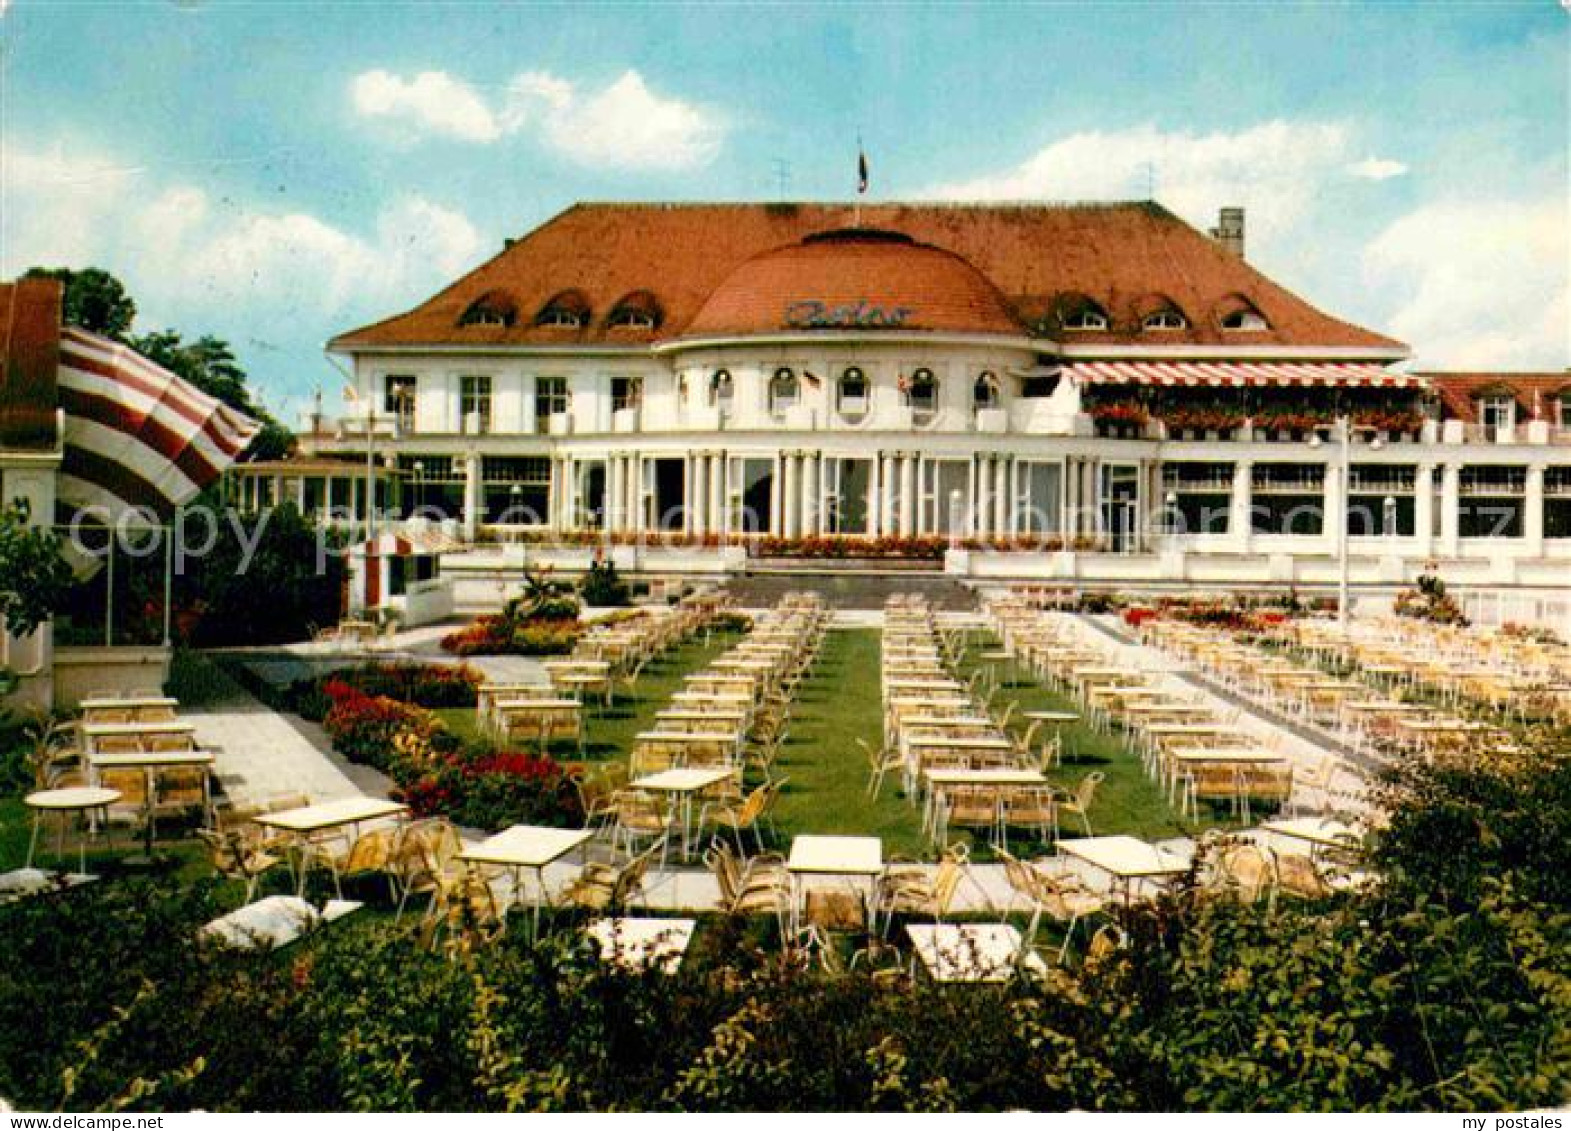 72727164 Travemuende Ostseebad Casino Garten Luebeck - Luebeck